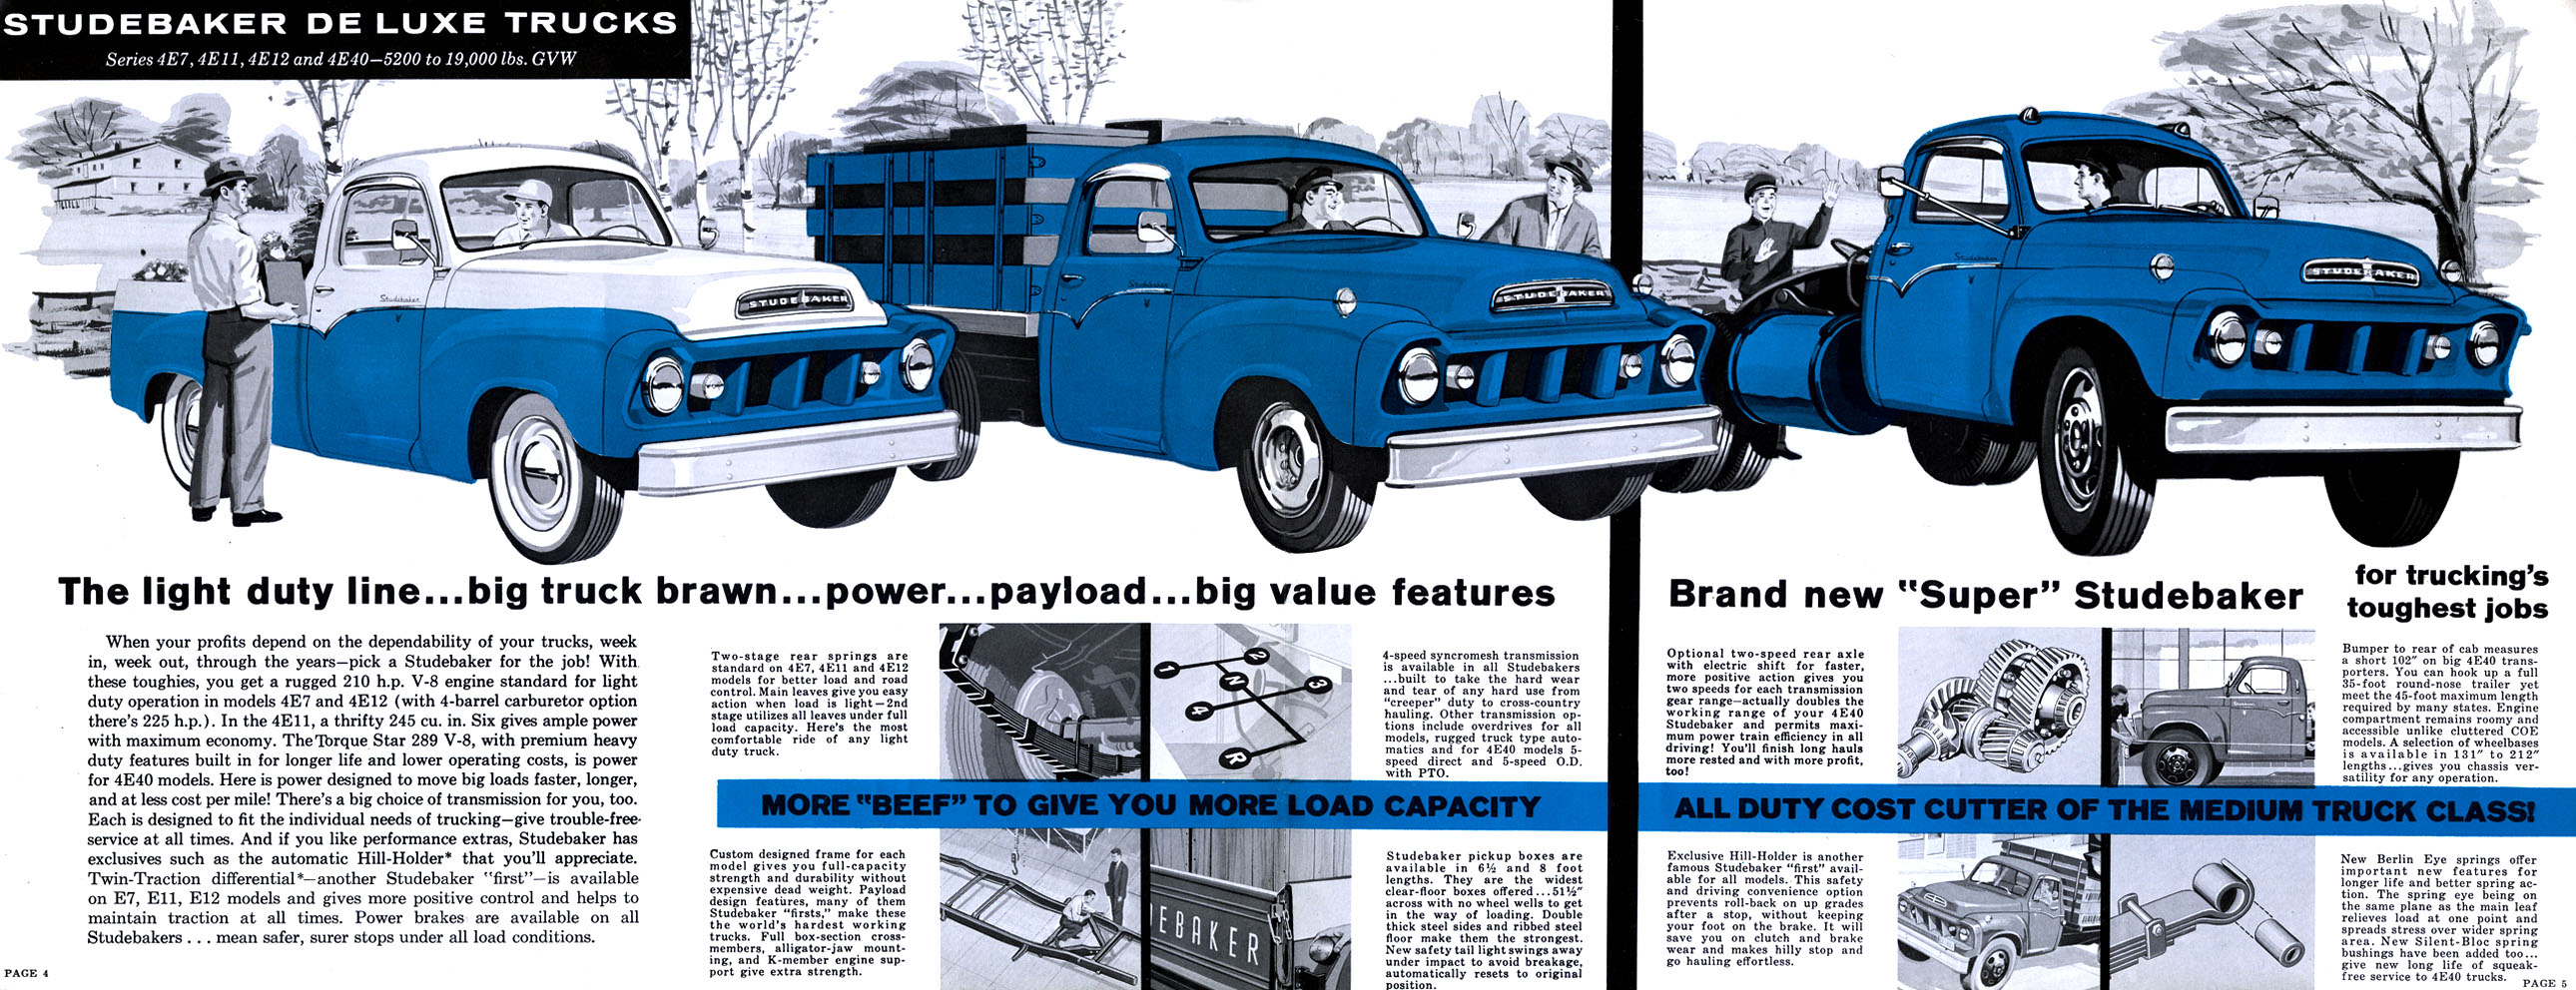 1959_Studebaker_Trucks-04-05